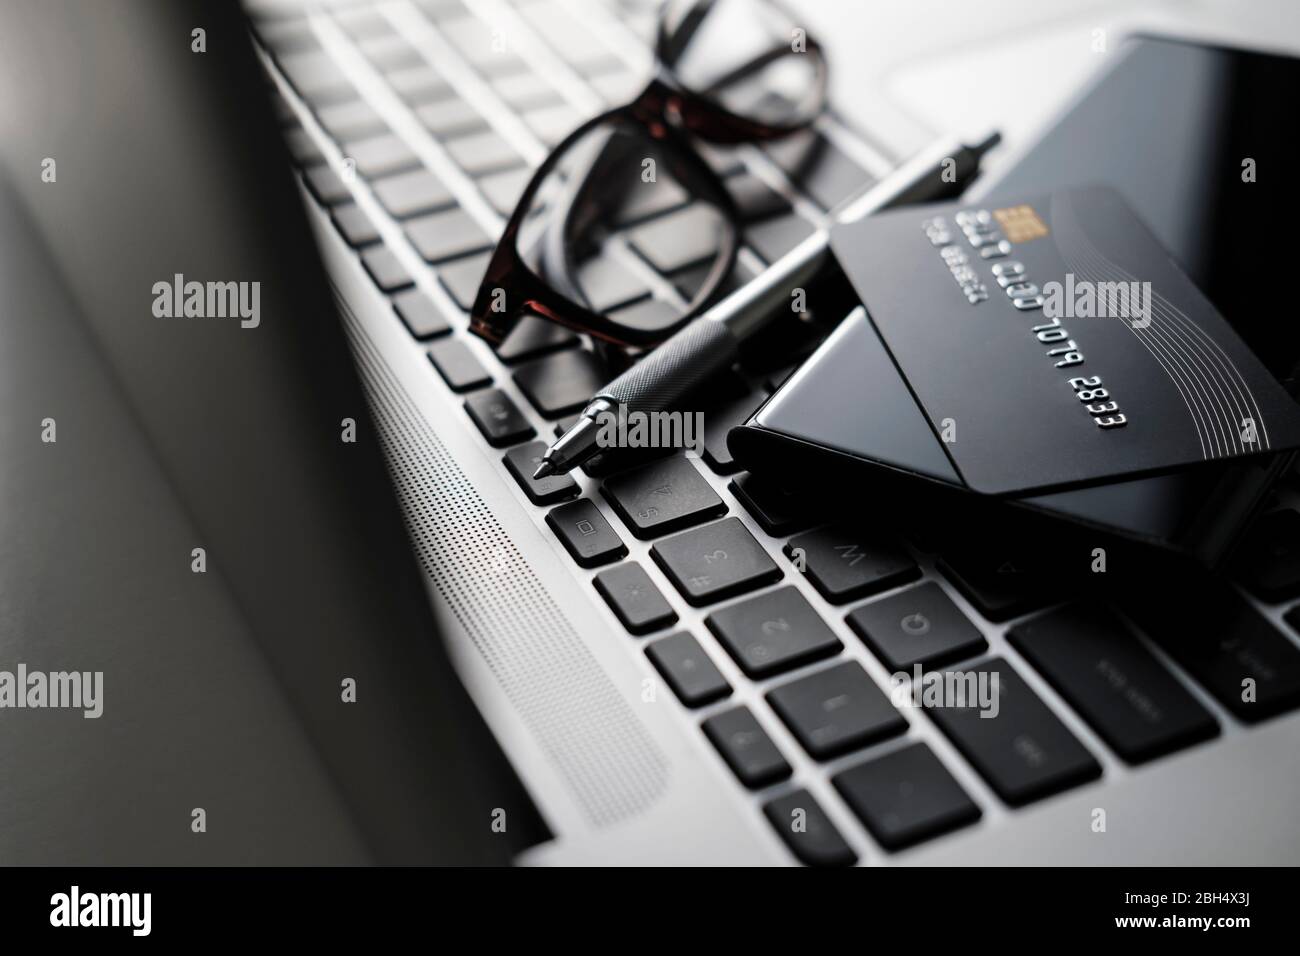 Carte de crédit, smartphone, stylet et lunettes sur le clavier de l'ordinateur portable Banque D'Images